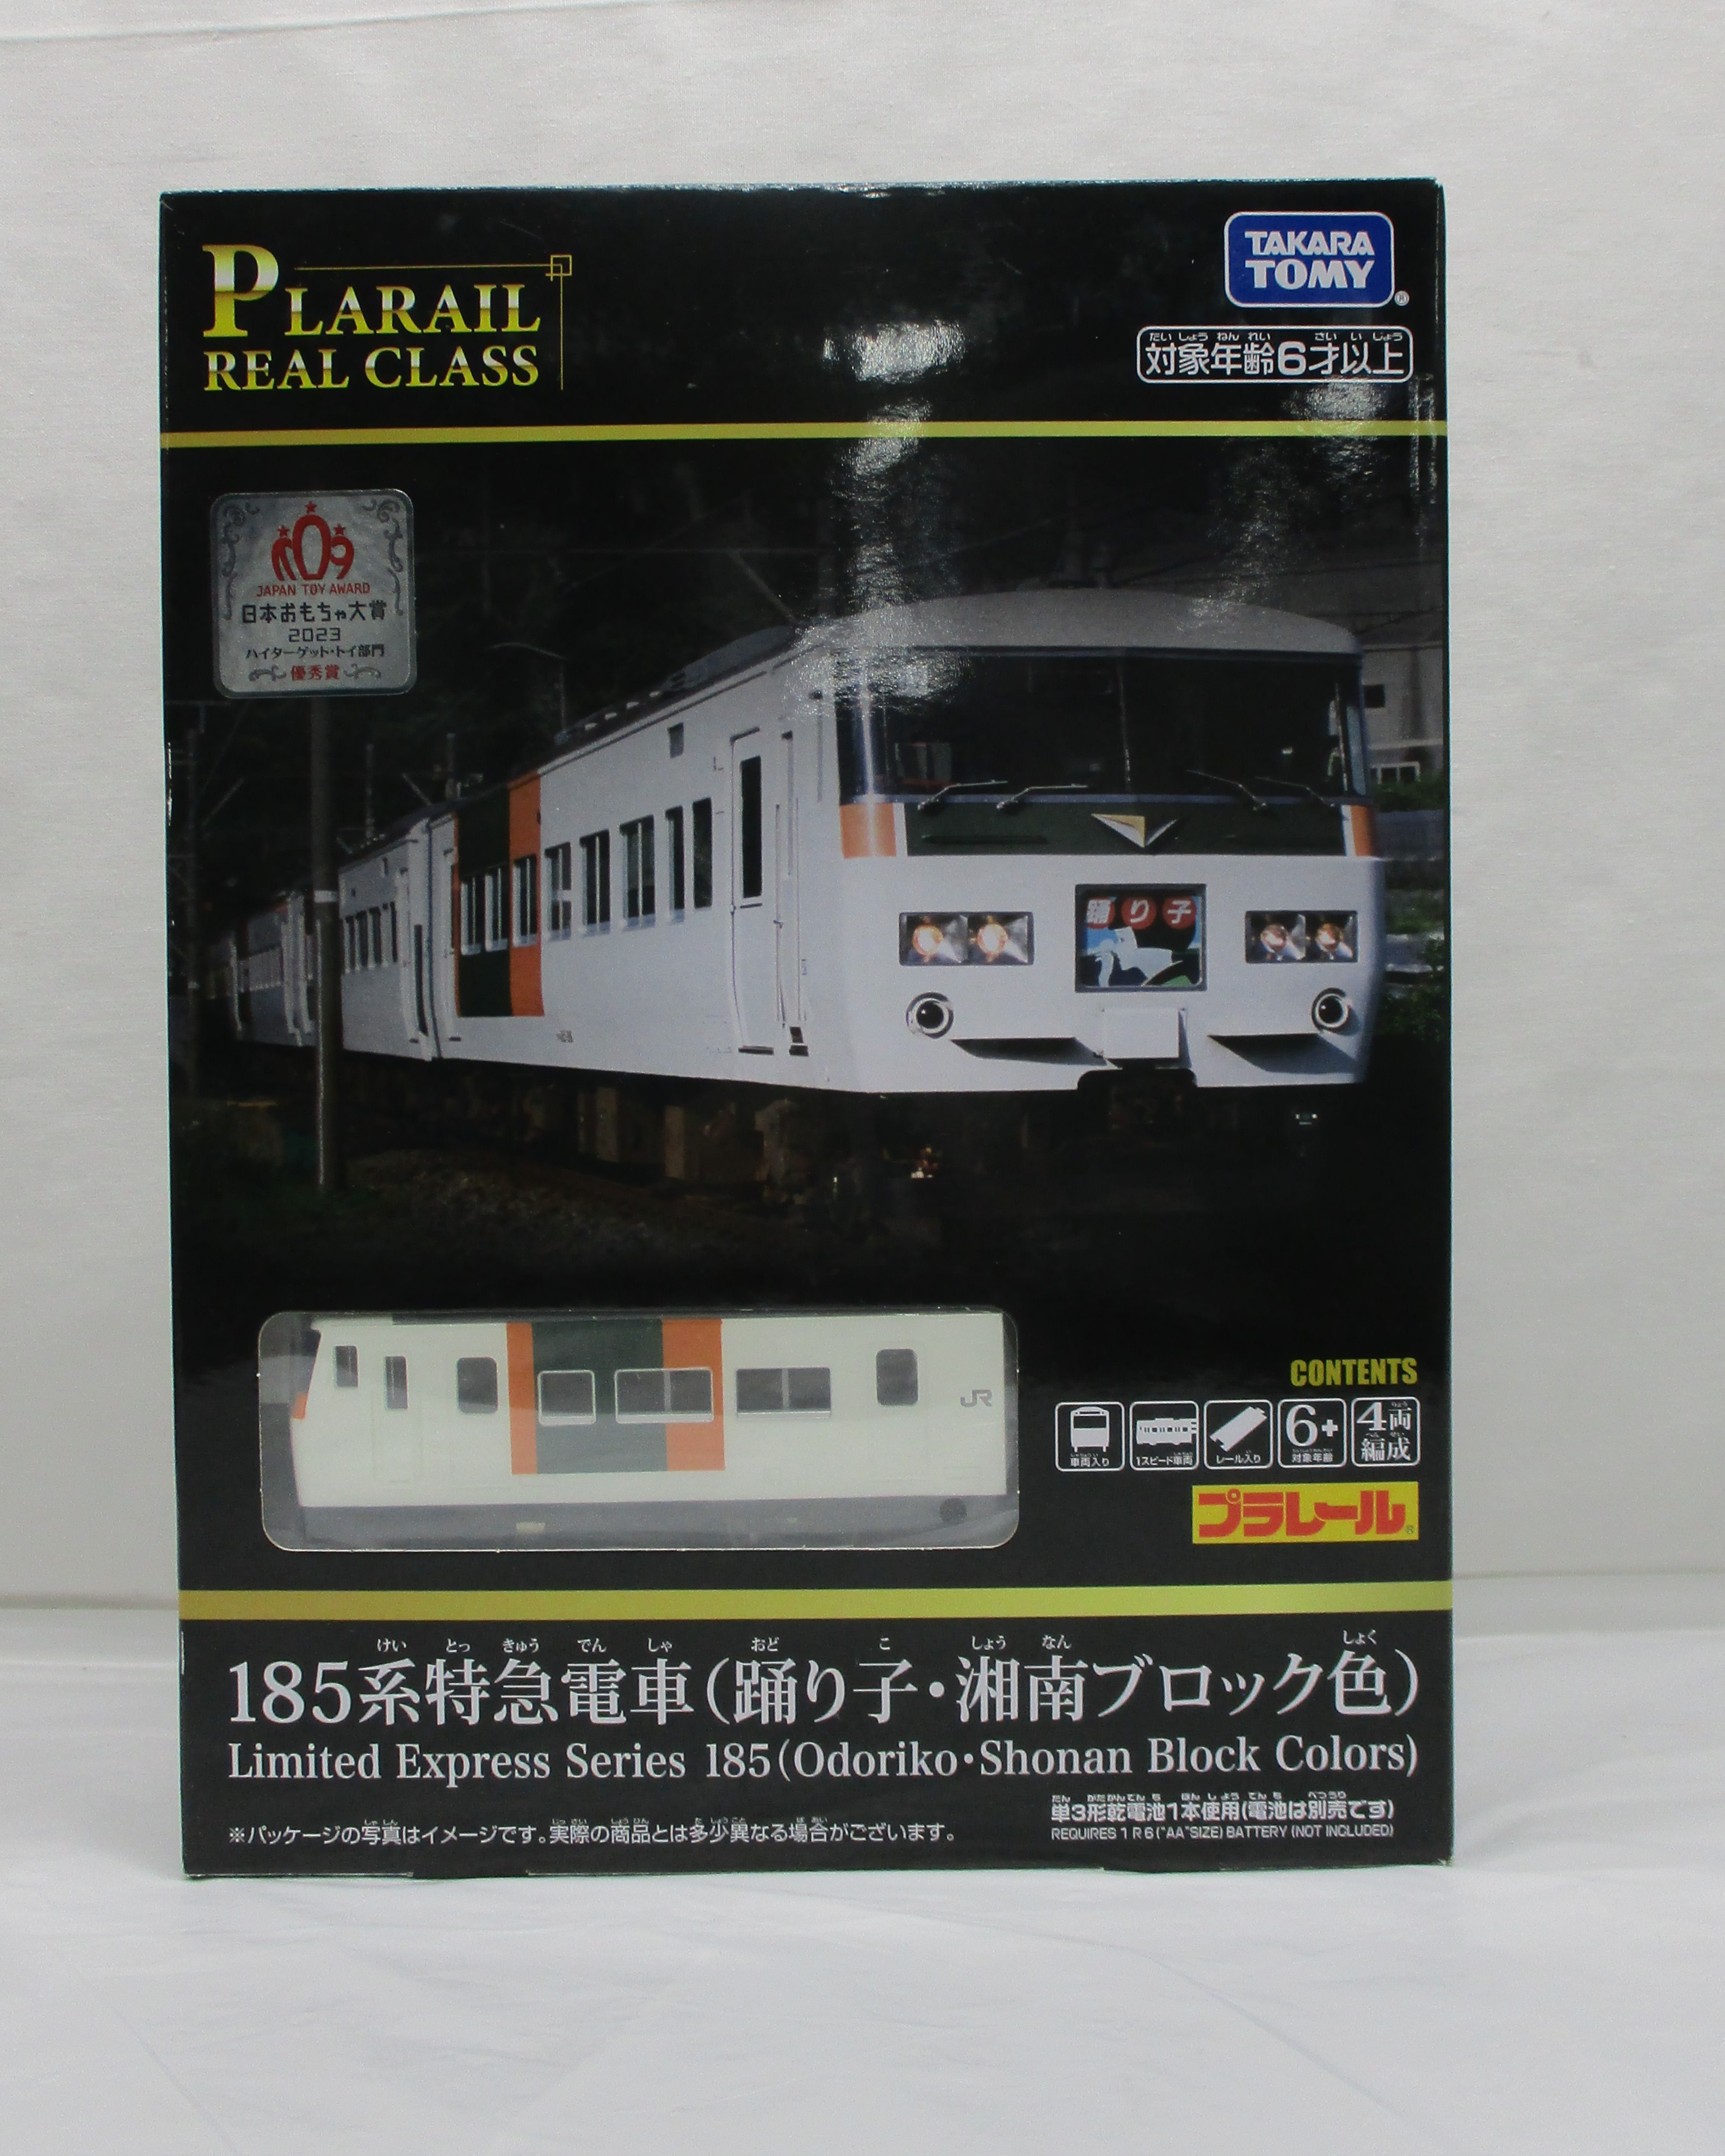 タカラトミー プラレール リアルクラス 185系特急電車(踊り子・湘南ブロック色)